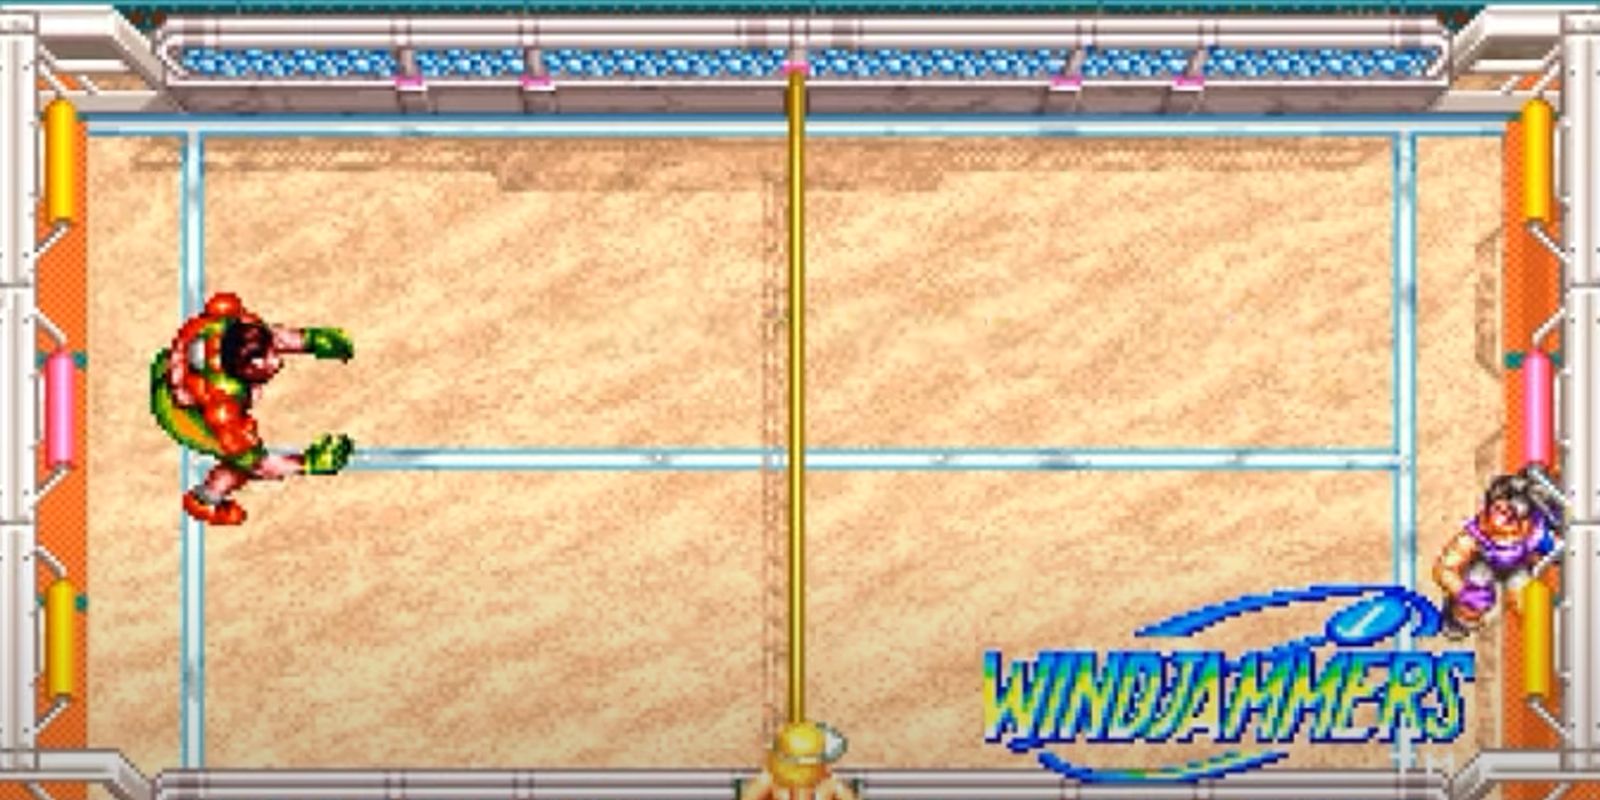 Windjammers 1994 arcade game